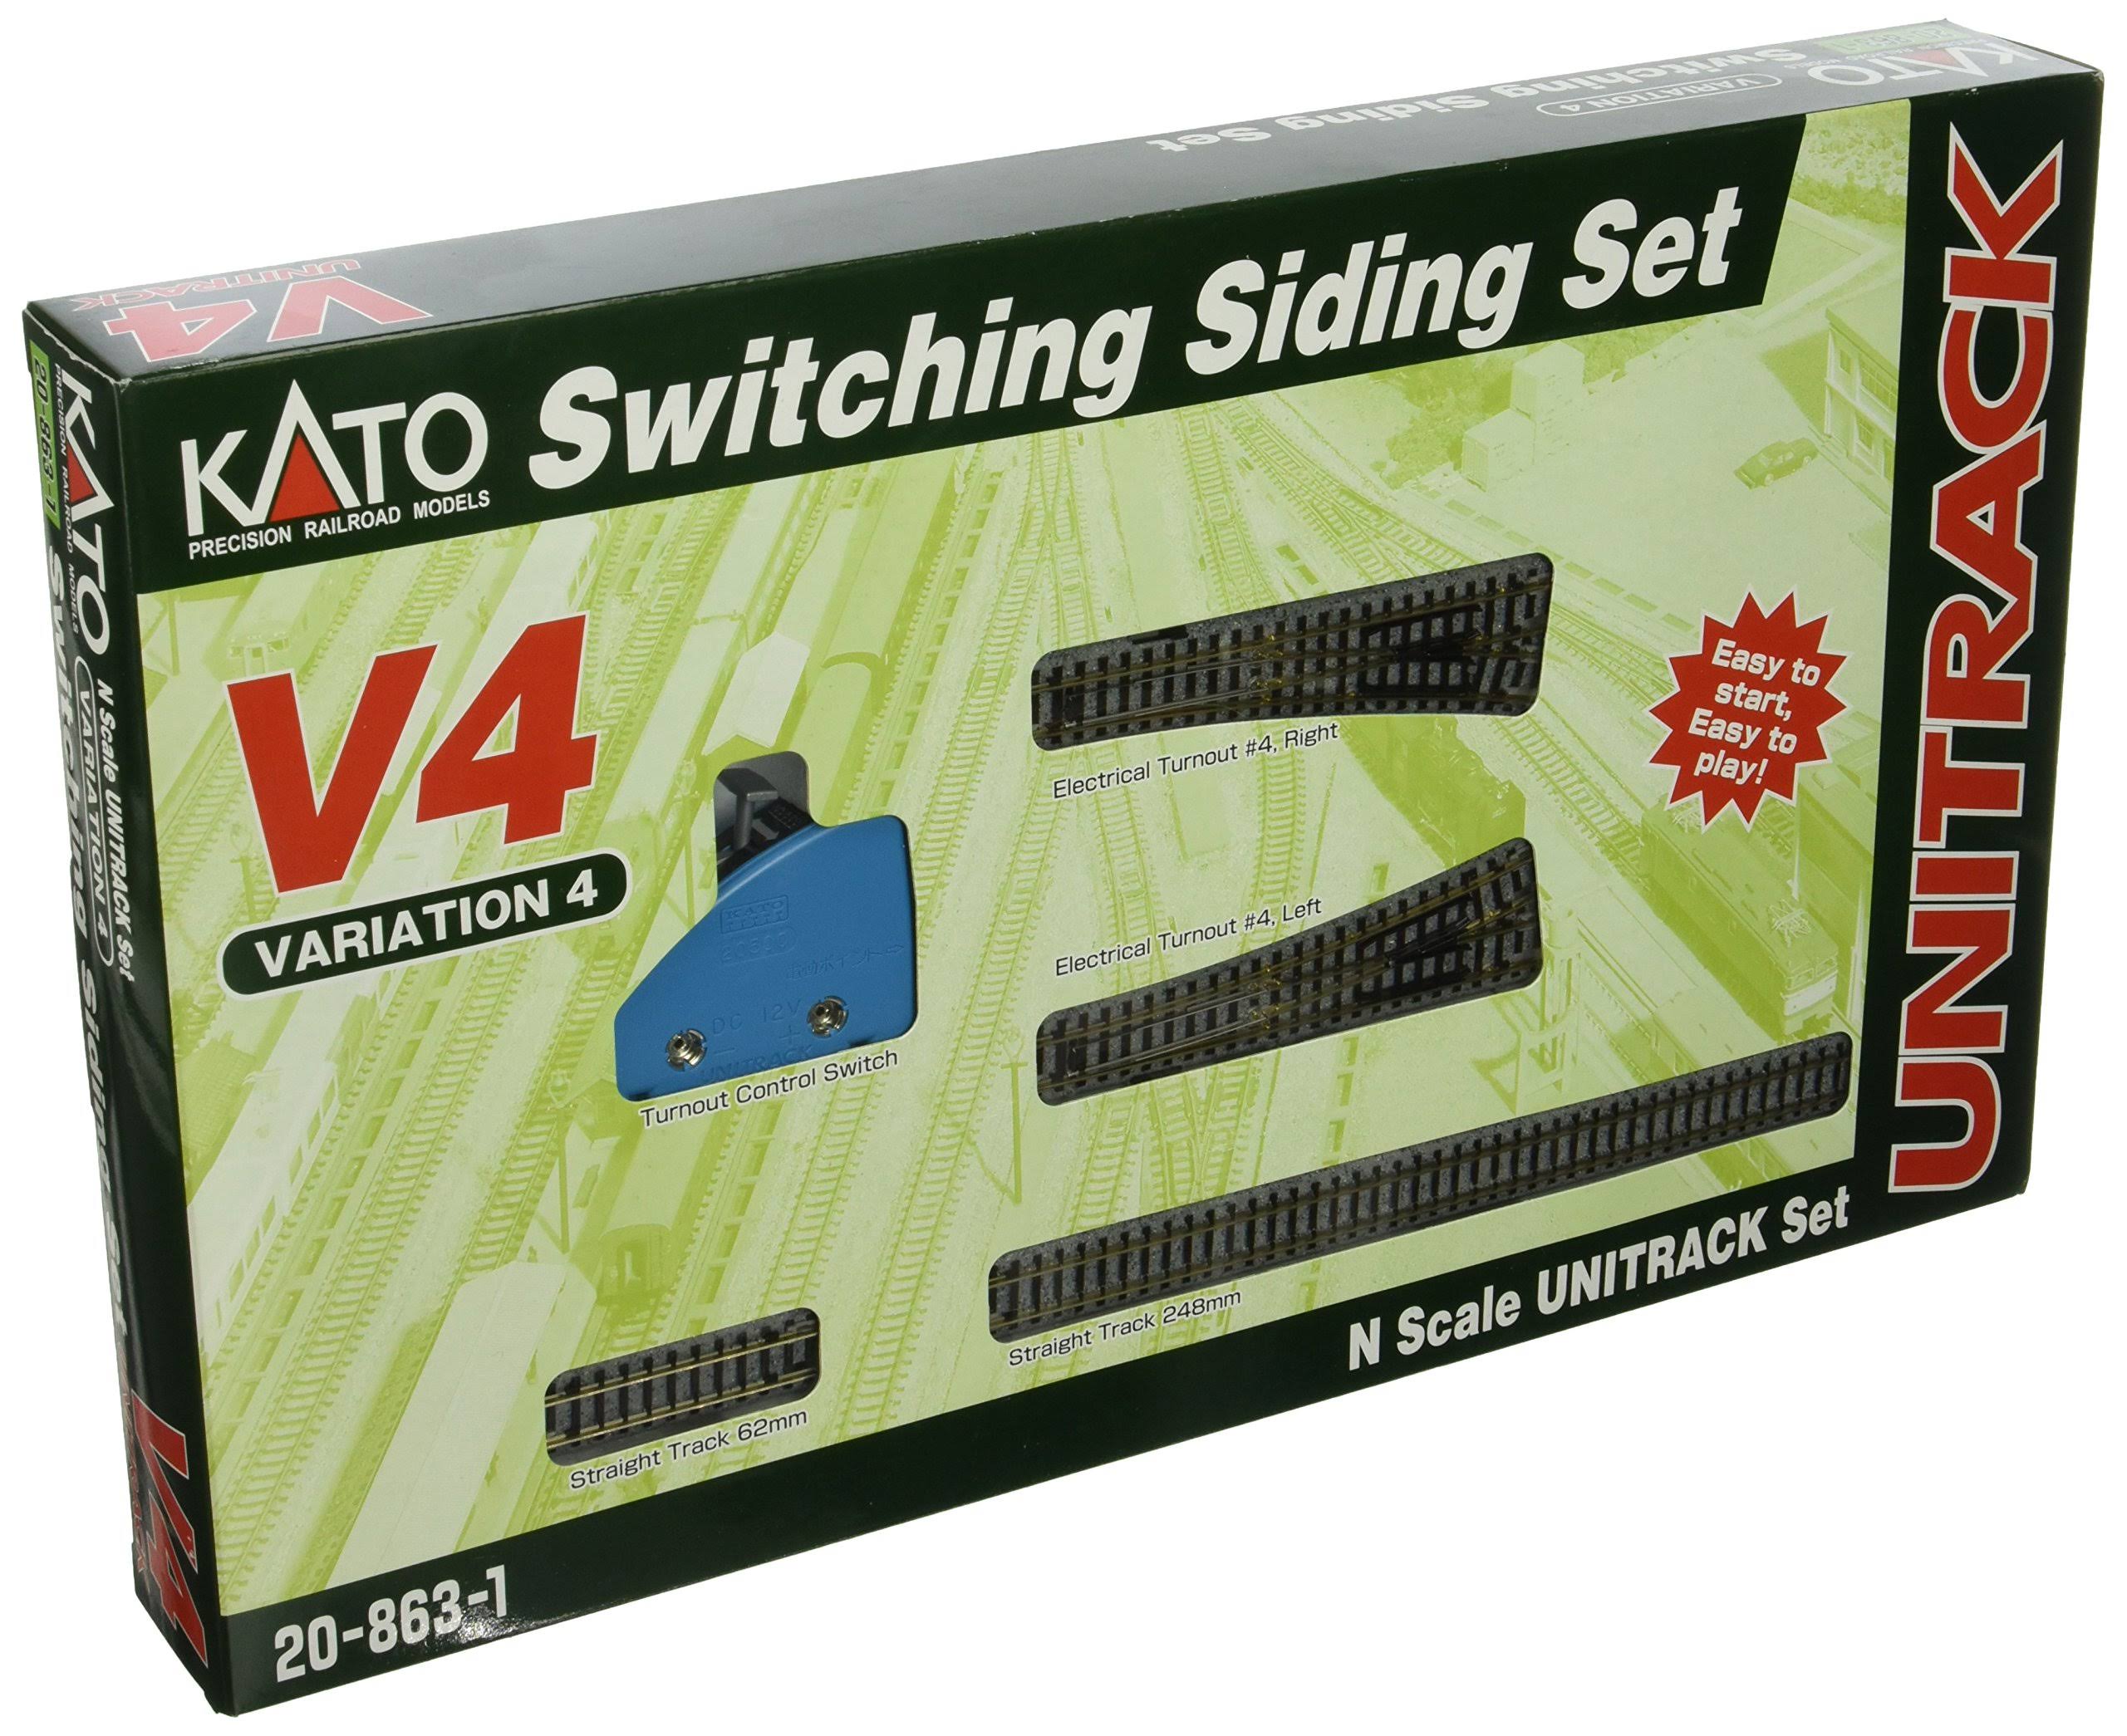 Kato Switching Siding Set - V4